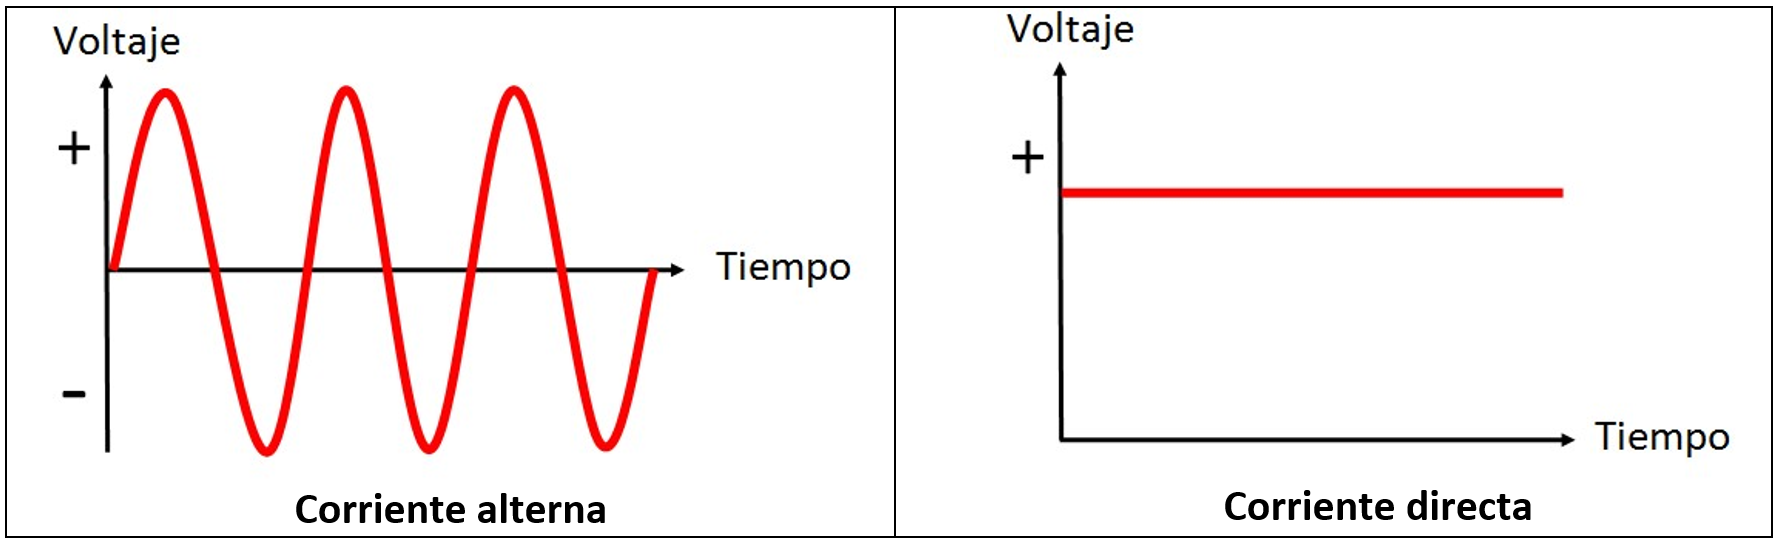 Conceptos básicos de circuitos eléctricos - 4